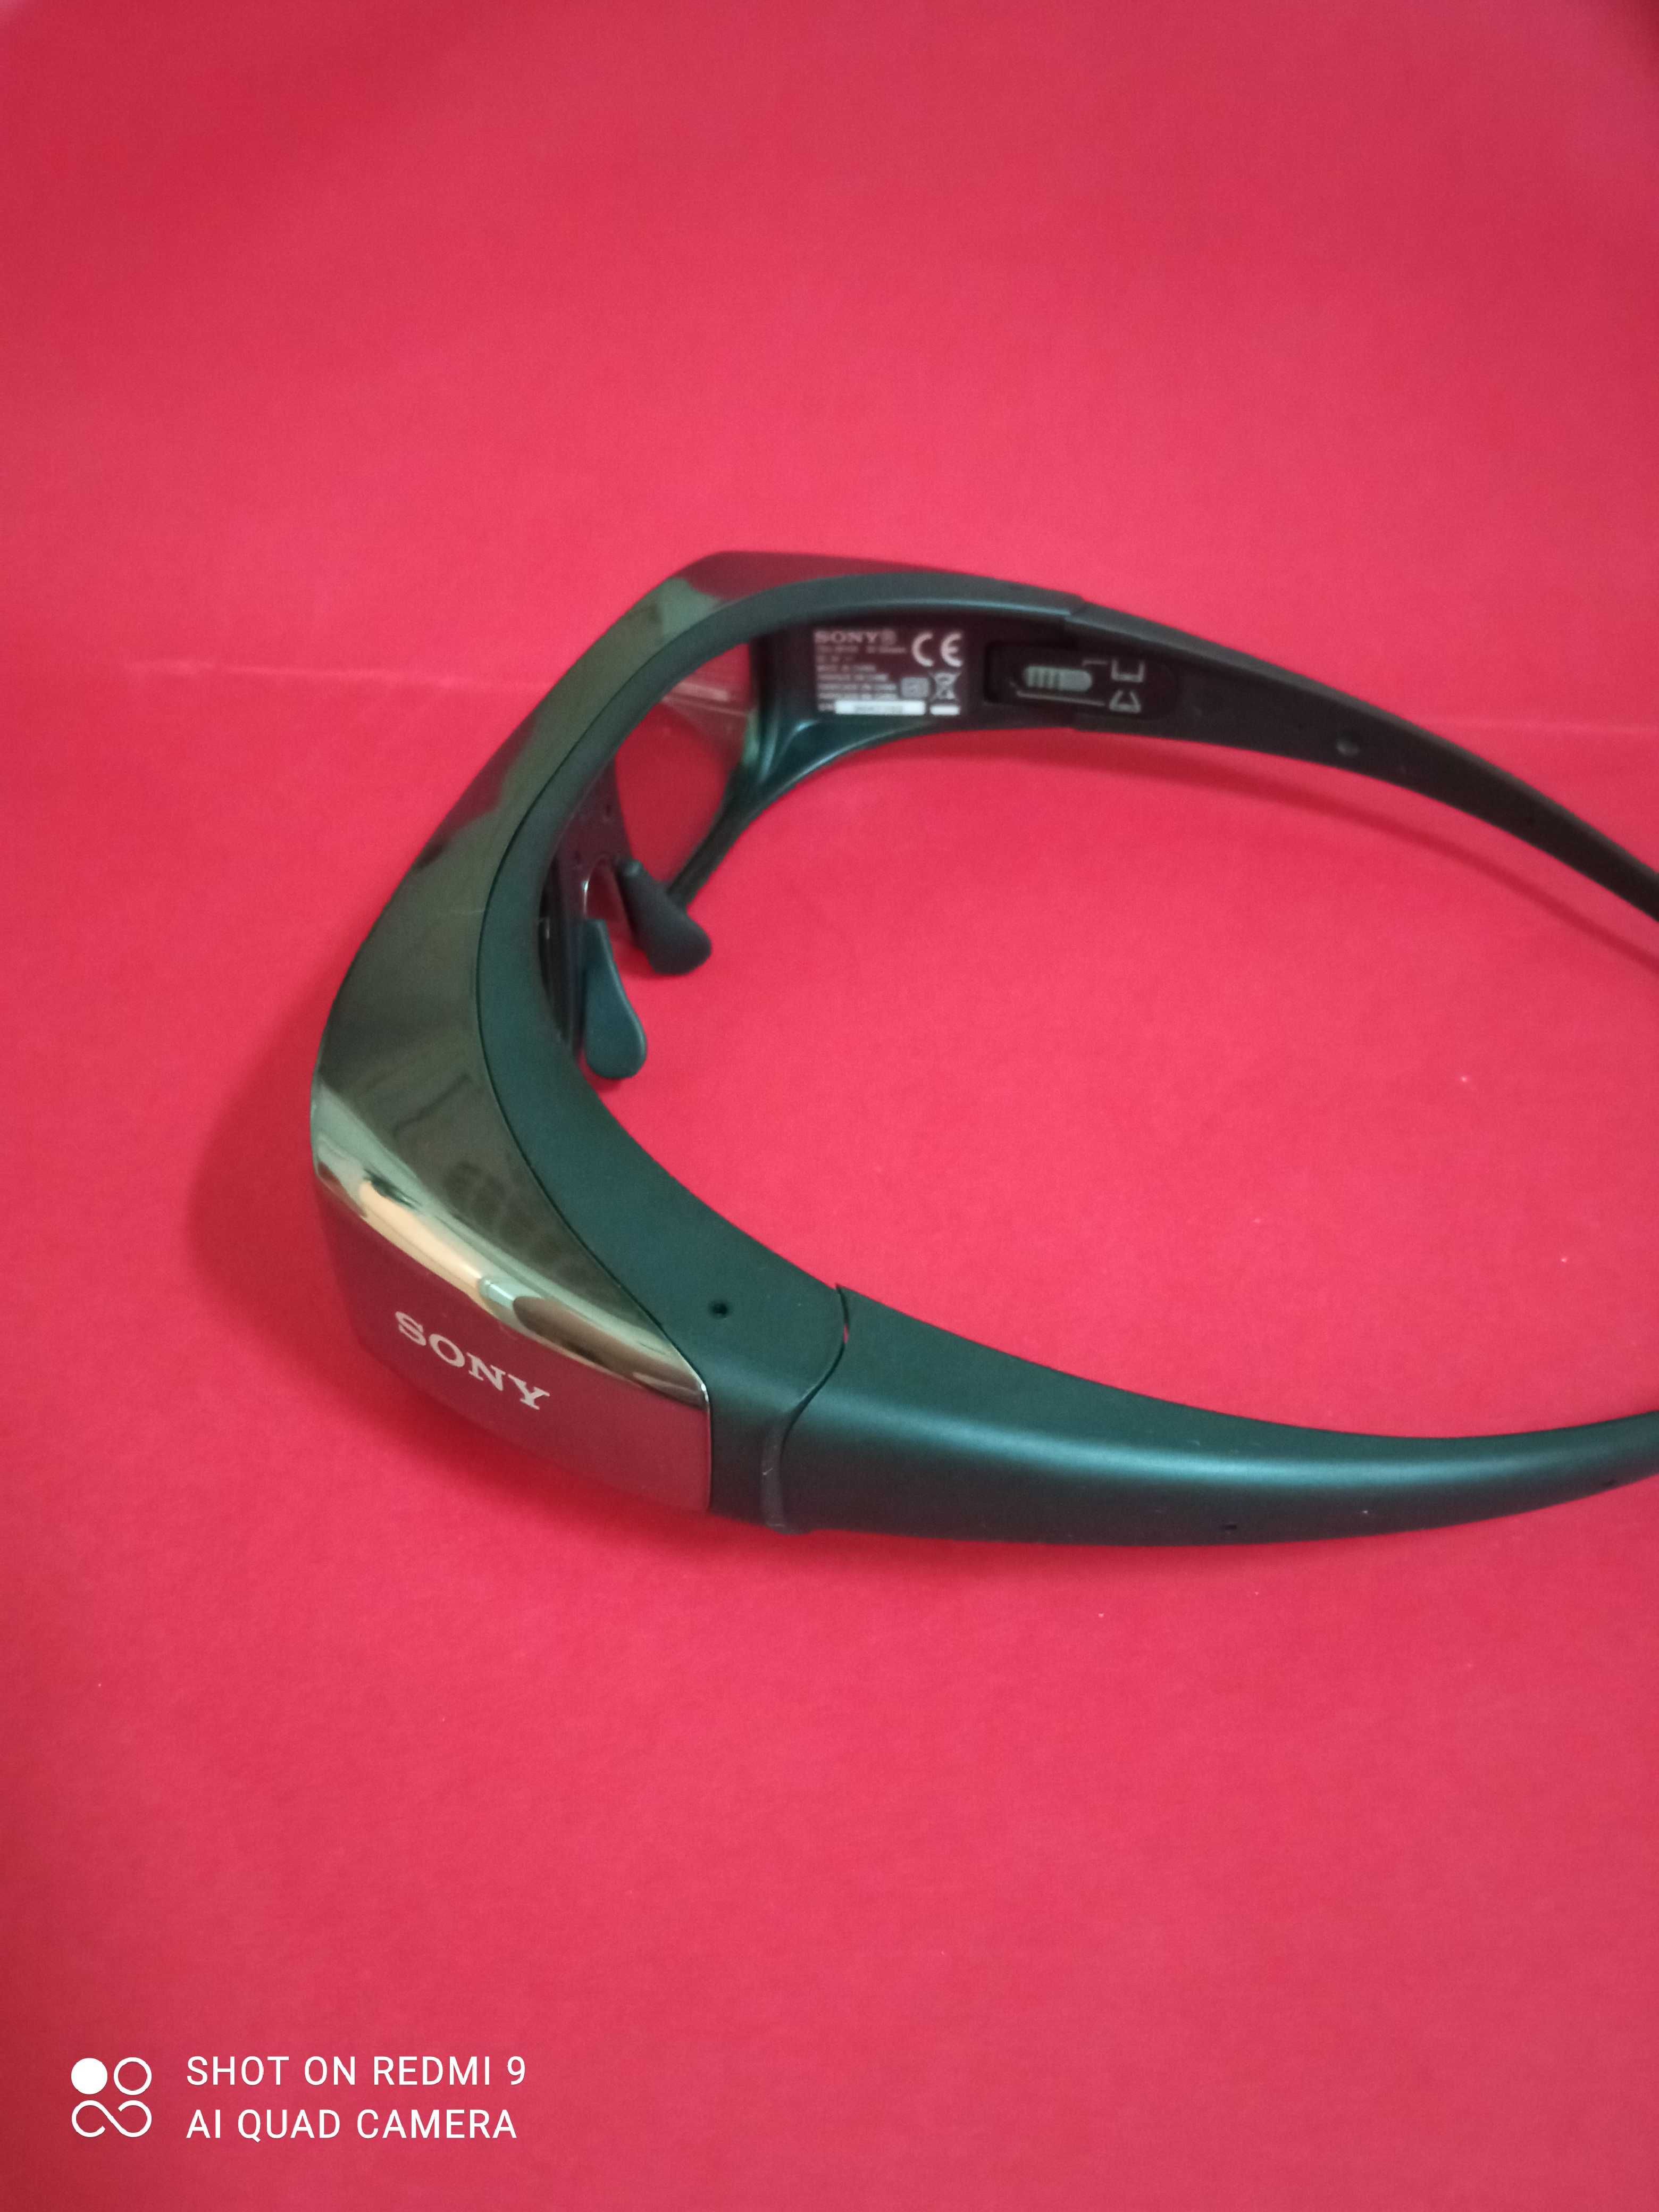 Oculos 3D "Sony" - TDG-BR100 - como Novos